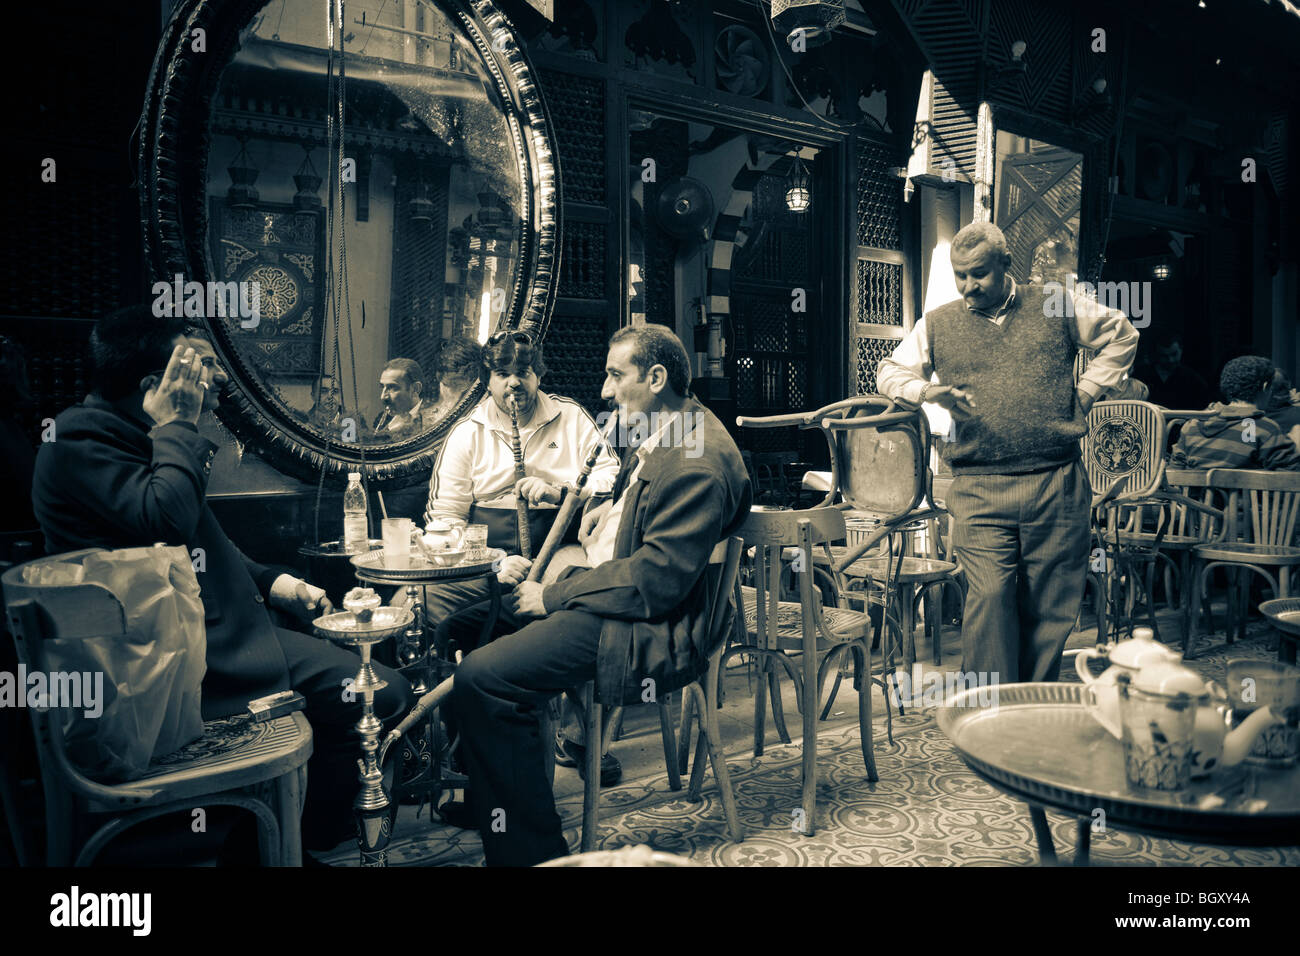 Los hombres fumadores hooka un tubo en una cafetería Foto de stock